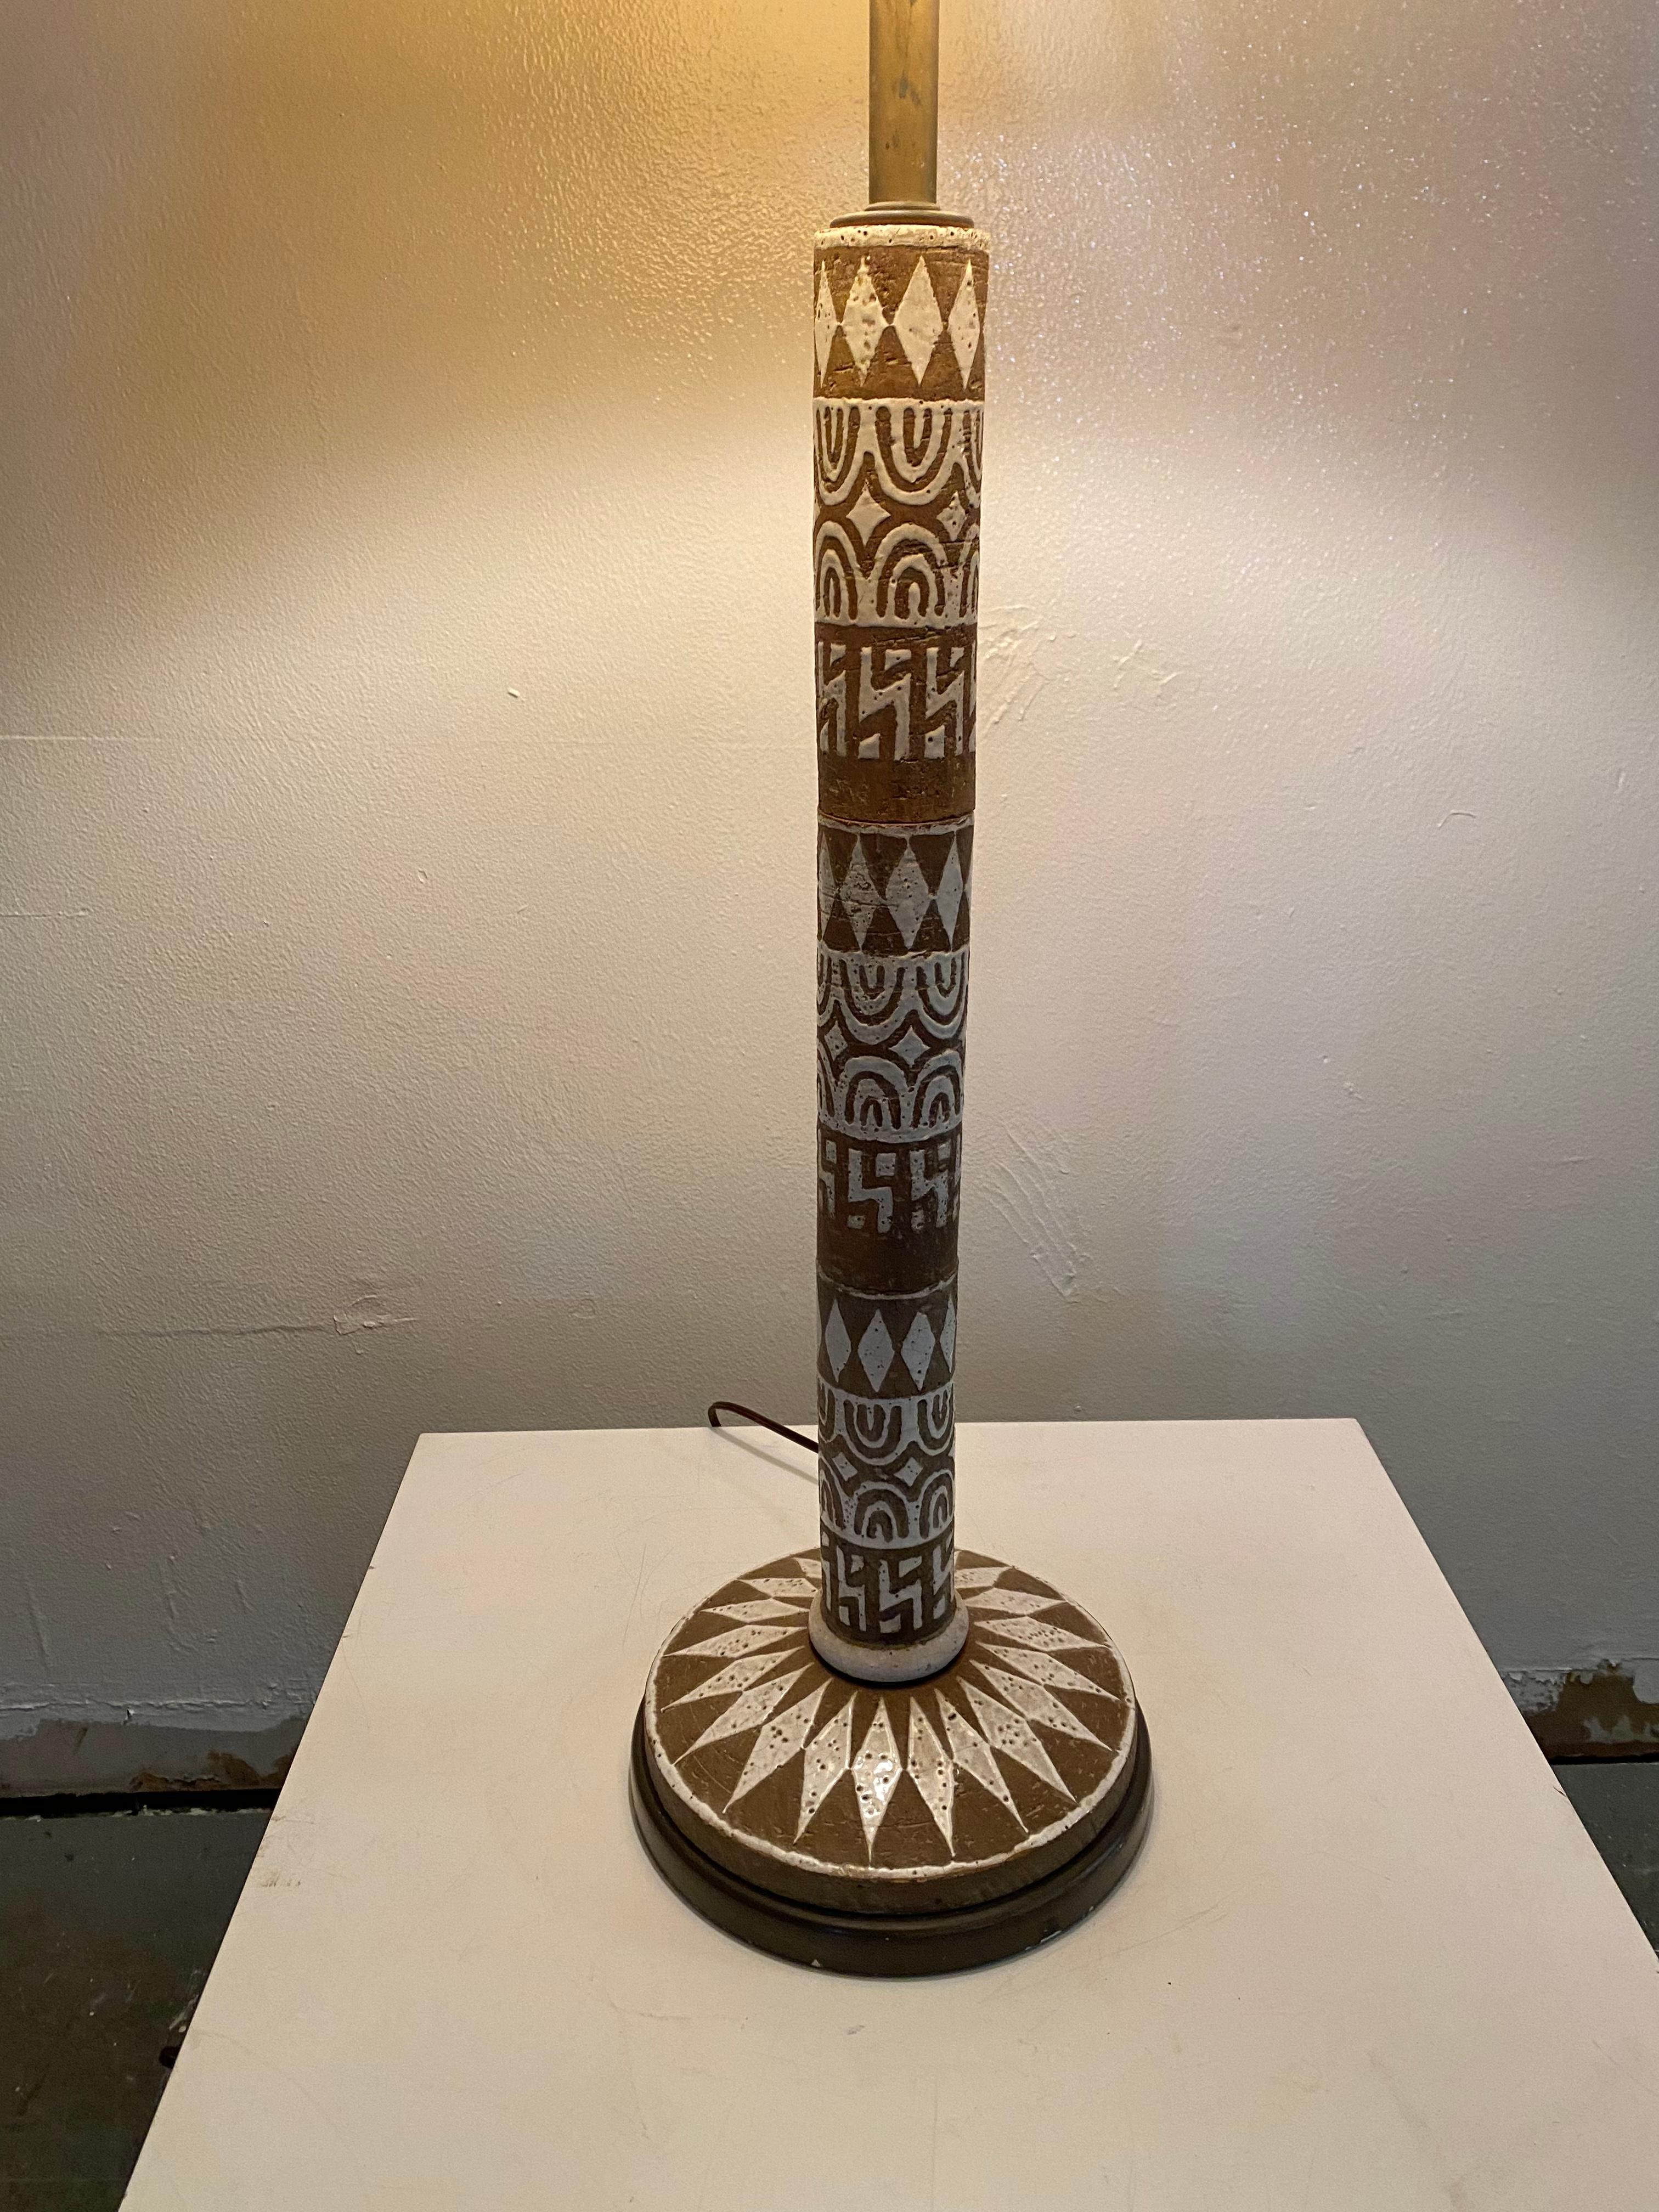 Pottery Ugo Zaccagnini Italian Ceramic Sgraffito Primative Design Table Lamp Midcentury